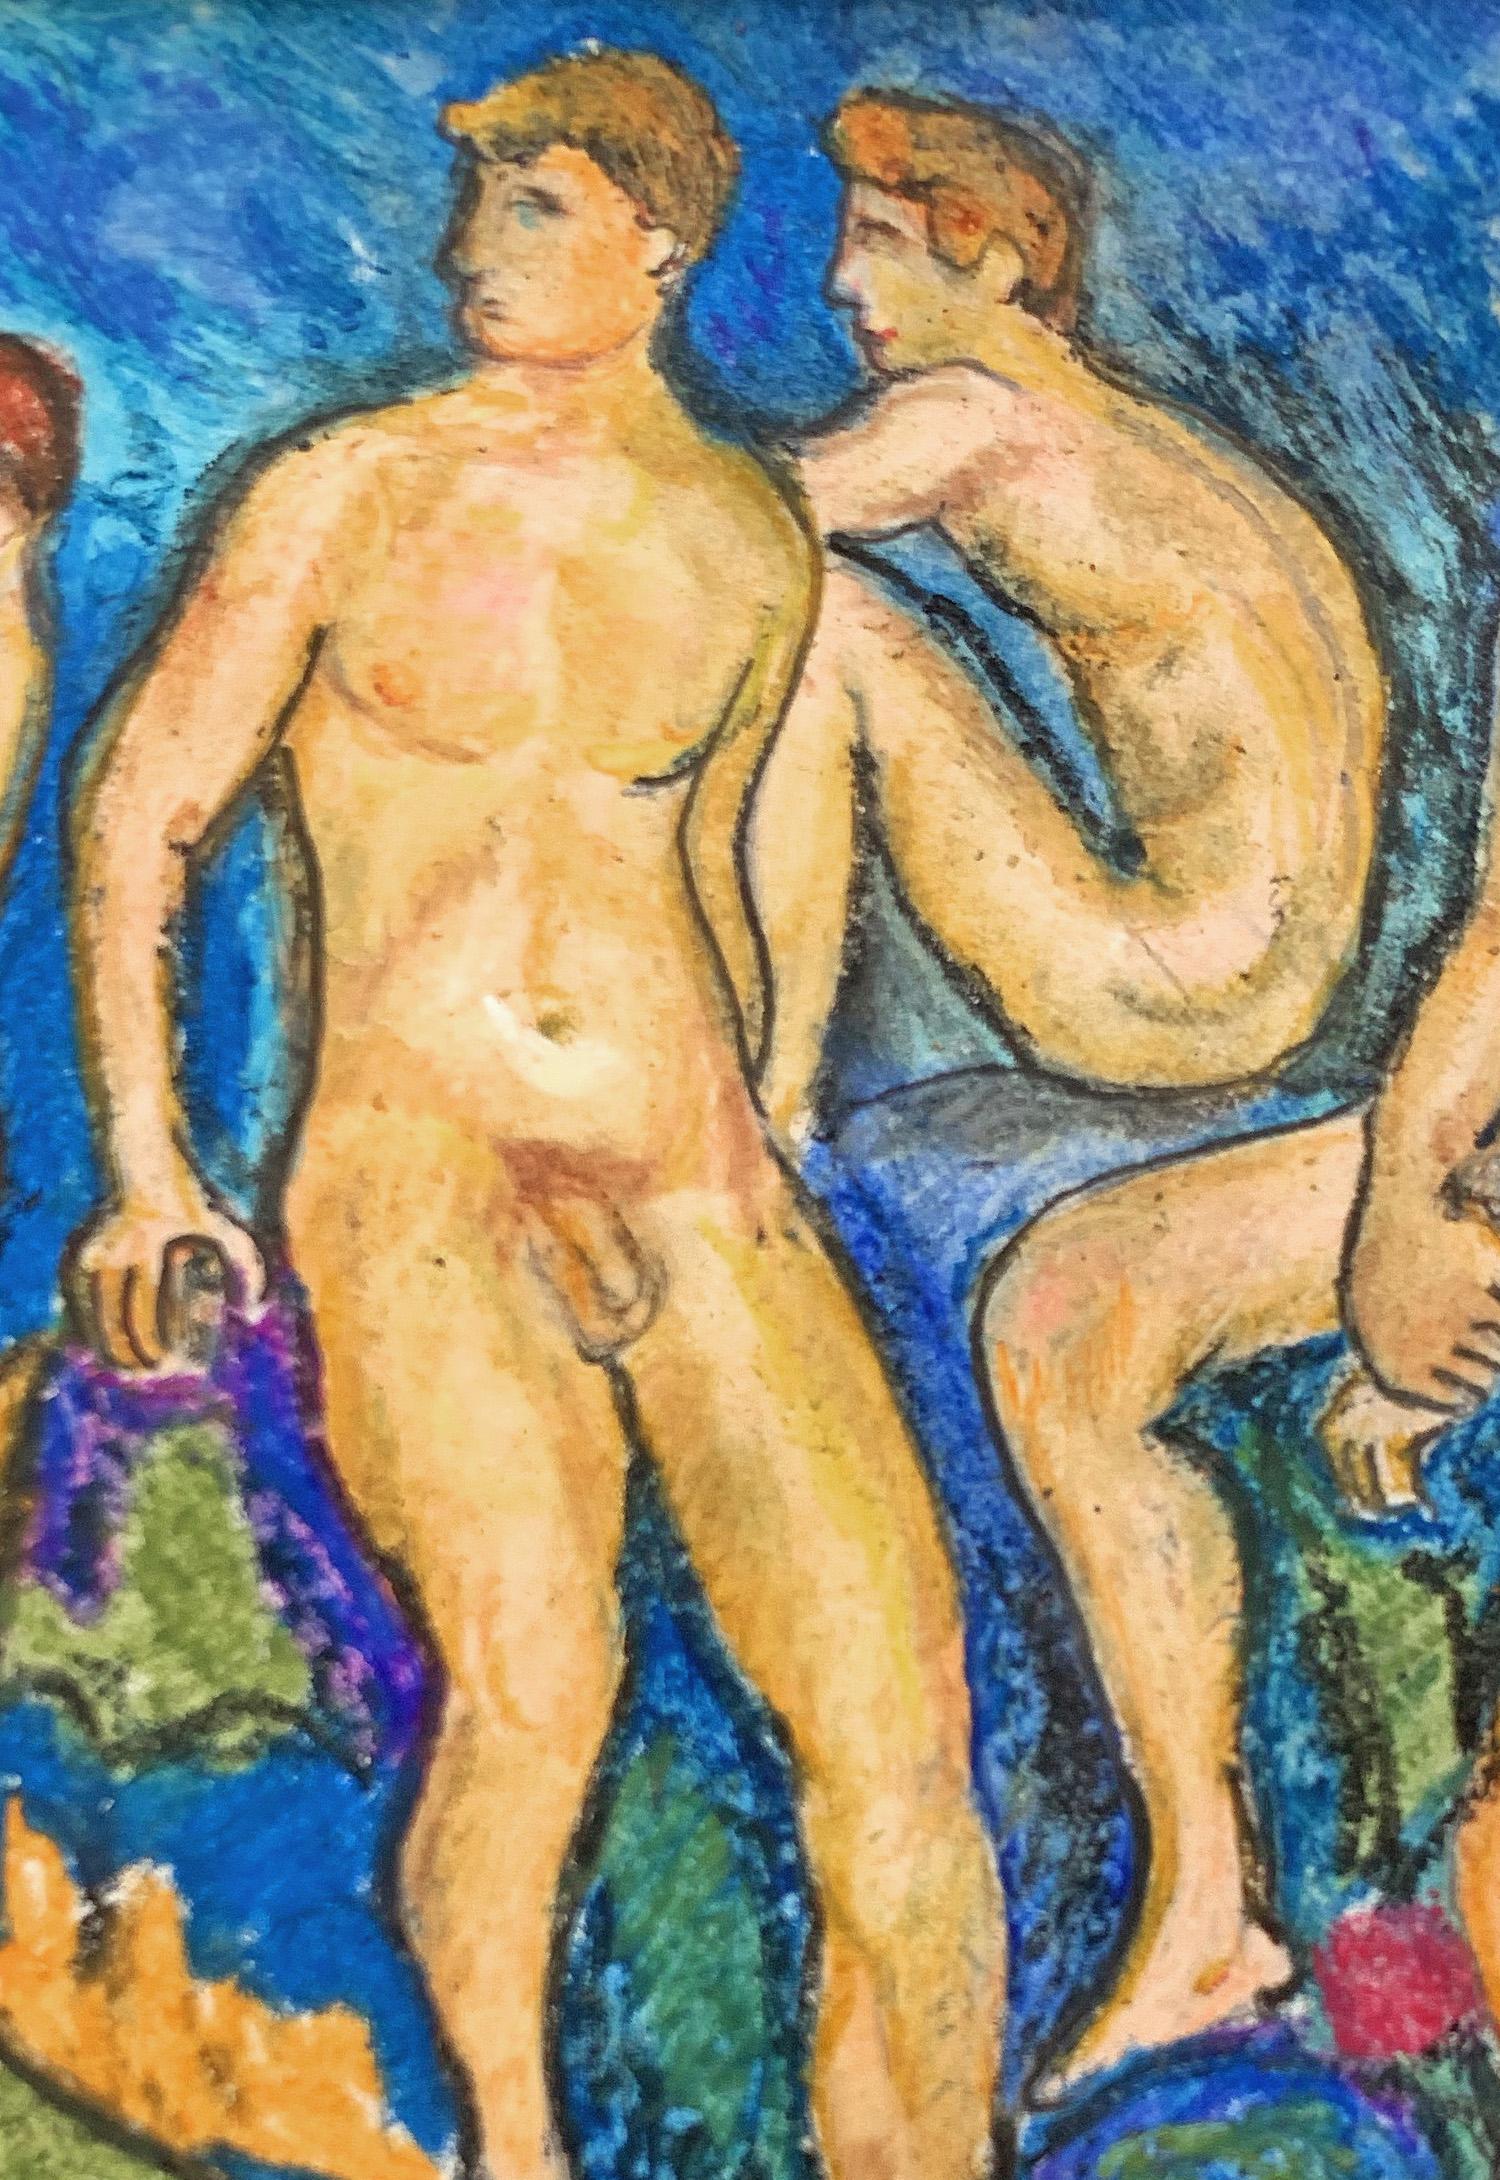 Diese schöne Zeichnung von vier nackten männlichen Figuren, die in die Ferne blicken, kontrastiert realistische menschliche Figuren mit einer stark abstrahierten Umgebung in kräftigen Blautönen, Grüntönen und gebrannter Siena. Die Zeichnung ist